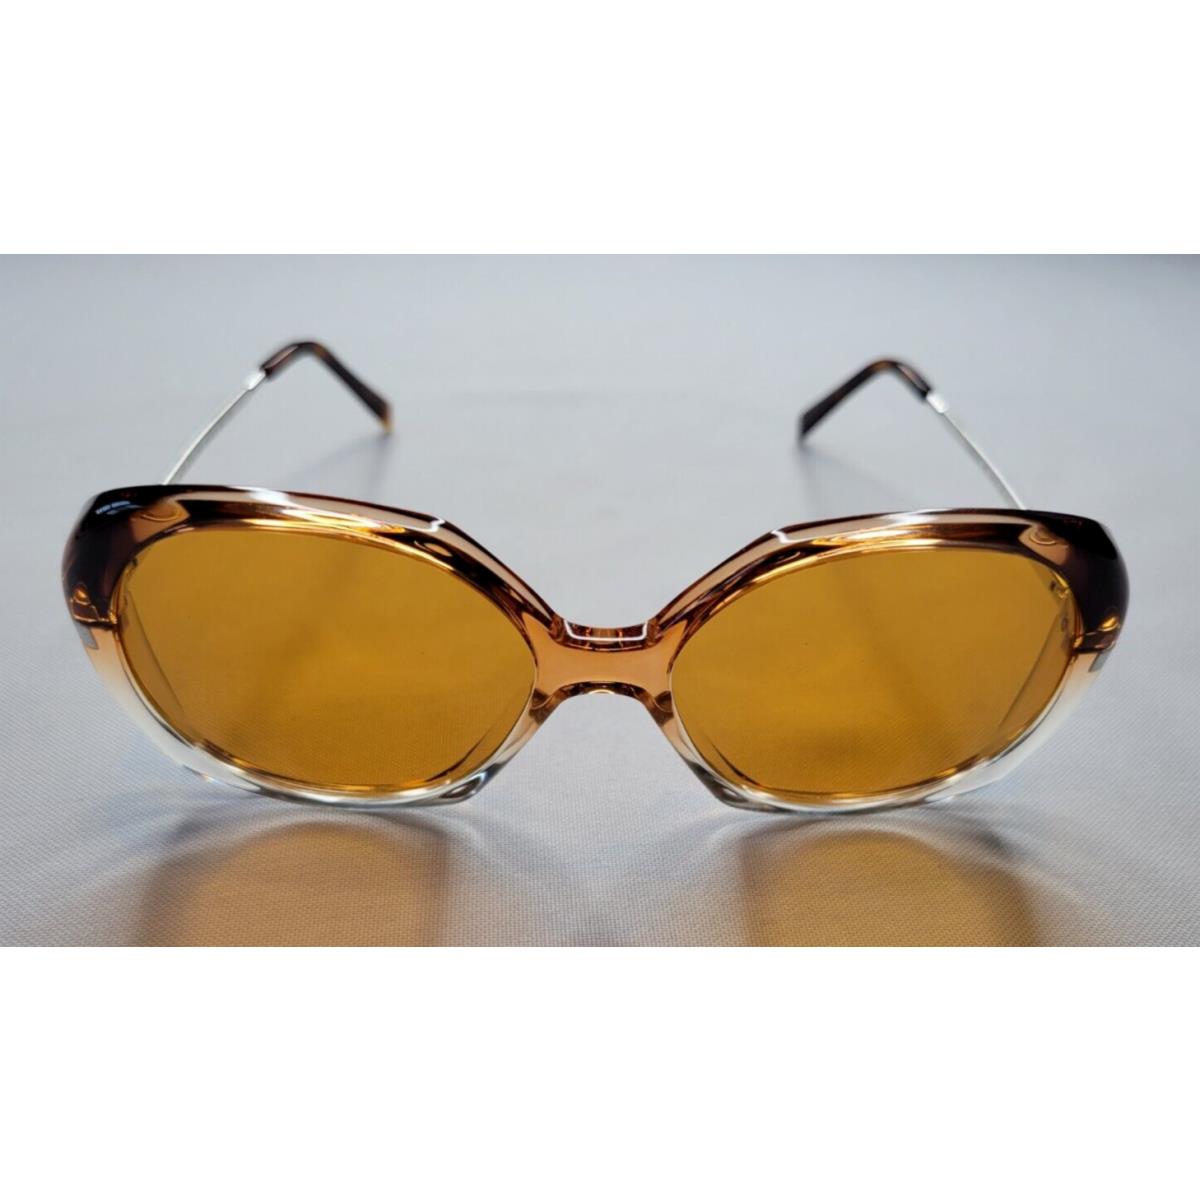 Celine sunglasses  - Brown/Silver Frame, Gray Lens